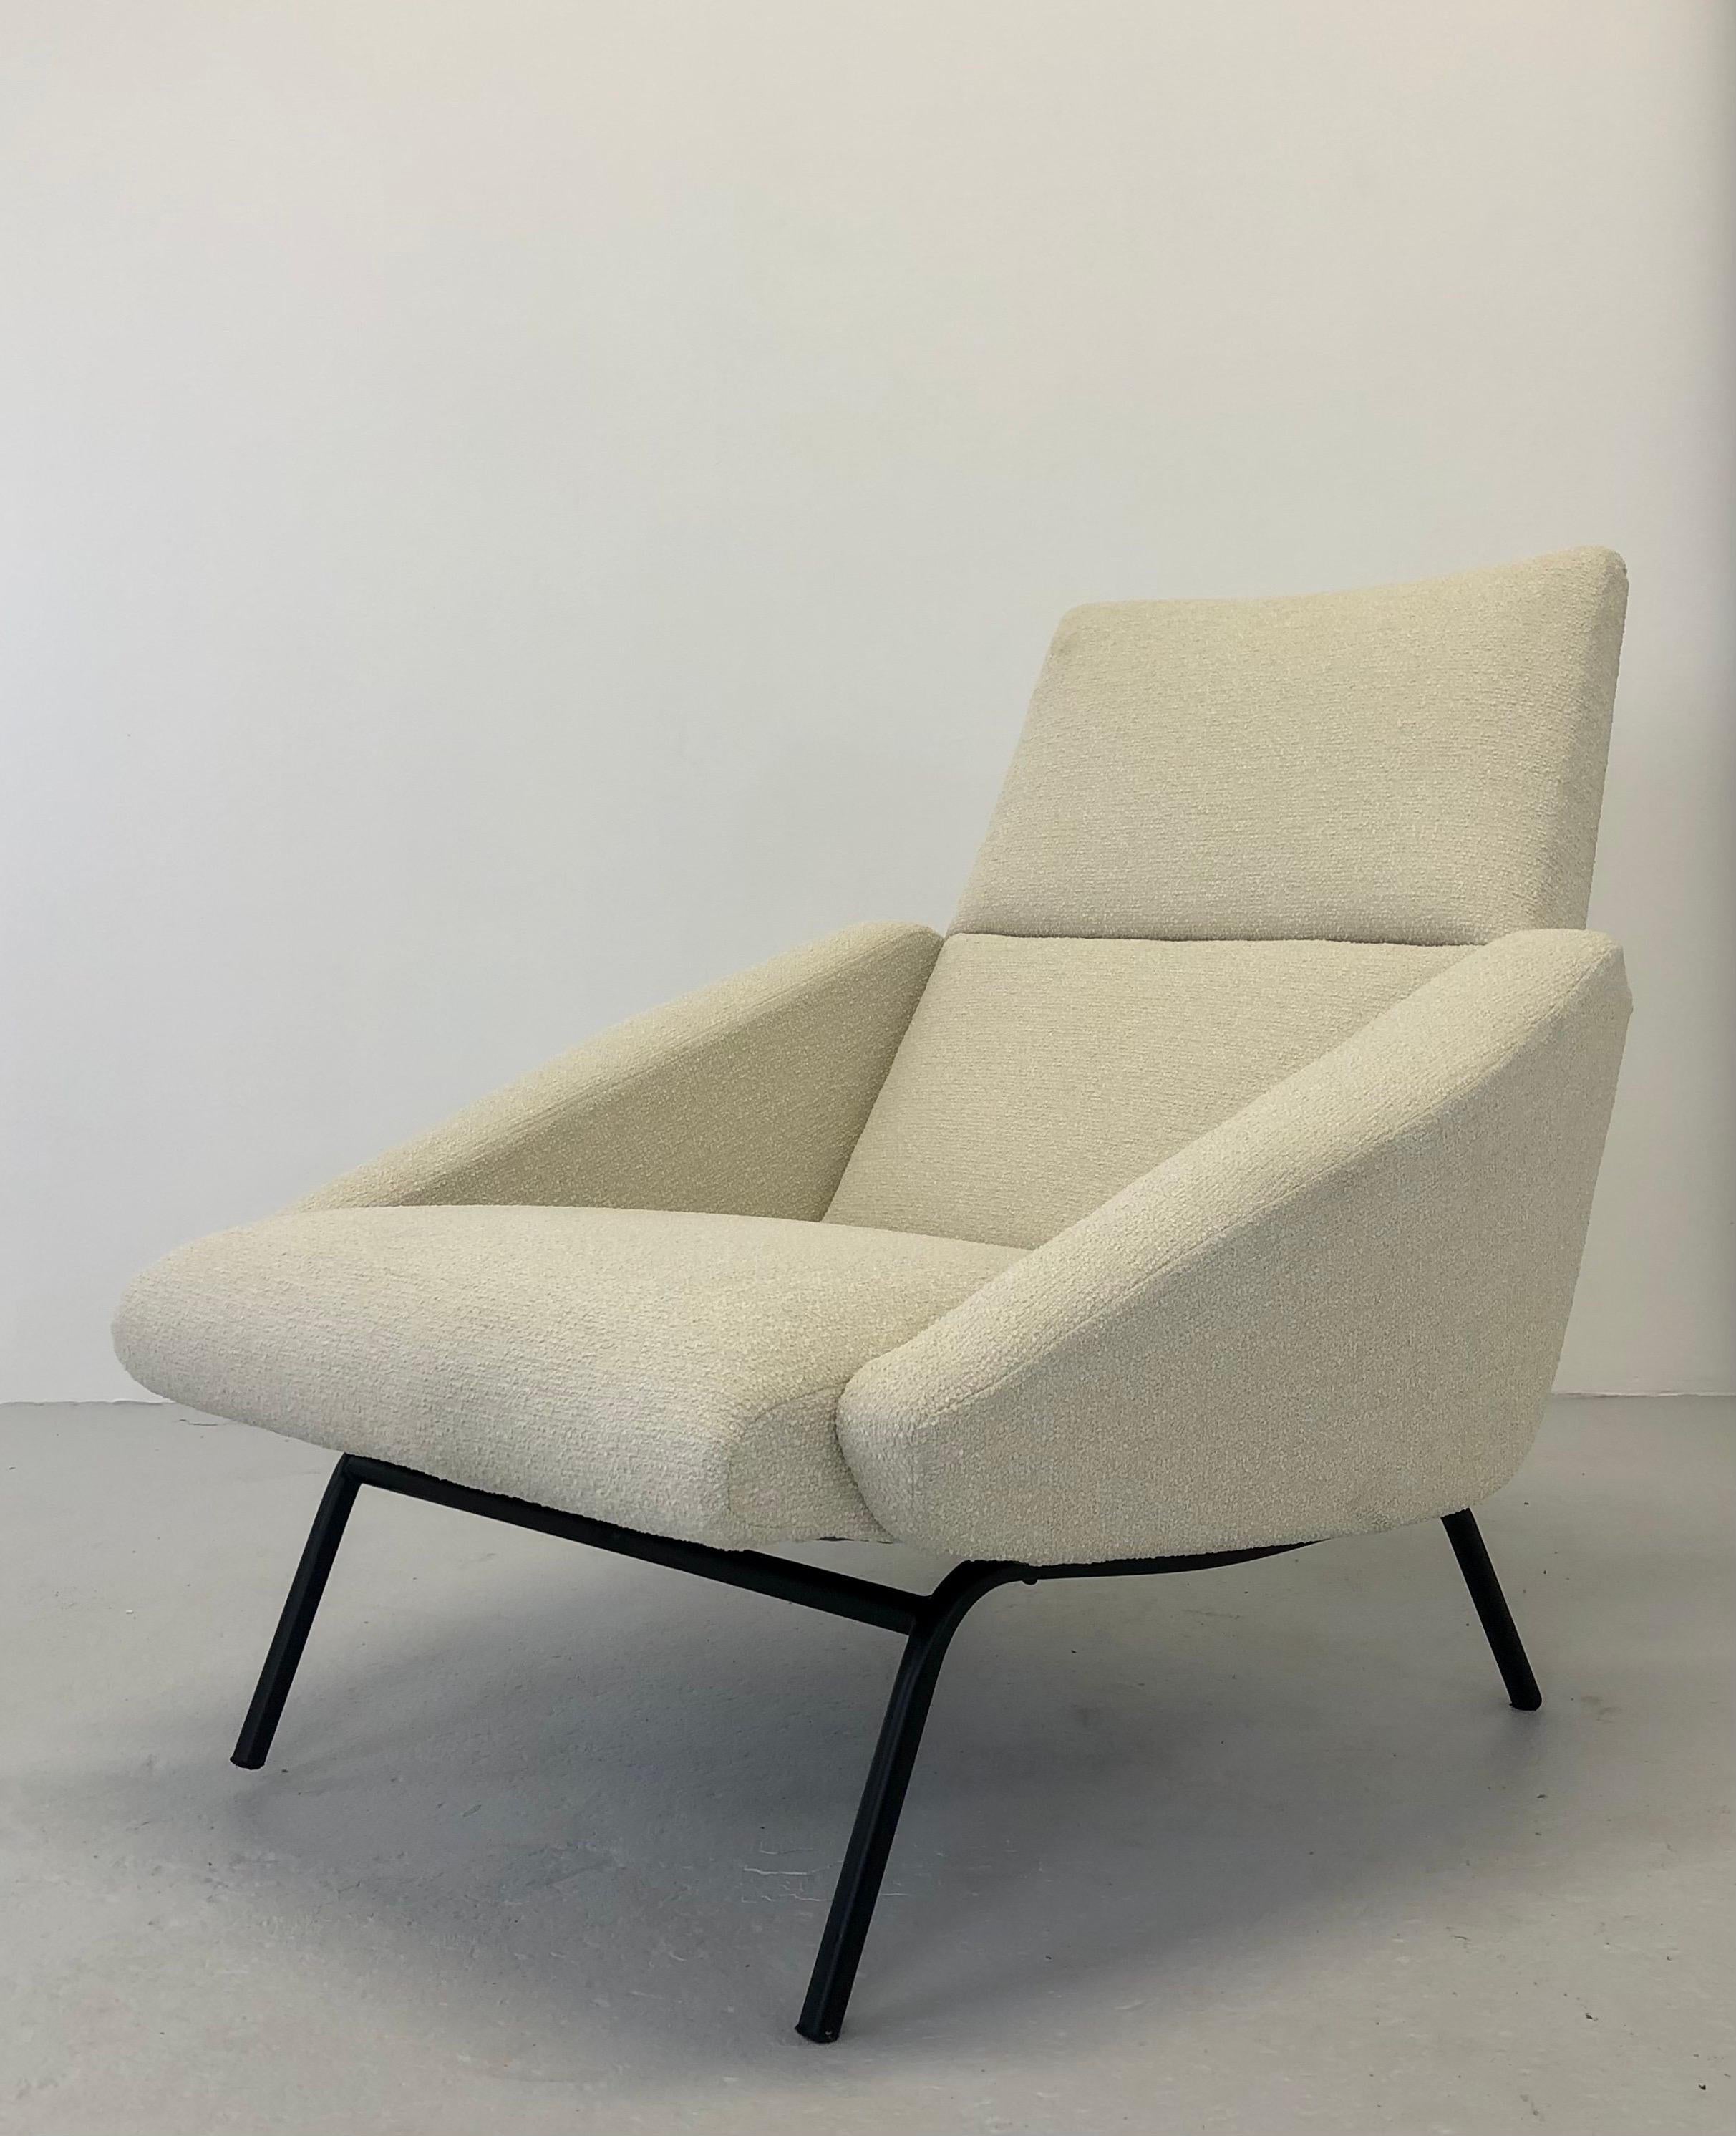 Dieser Sessel von Gérard Guermonprez, der typisch für die französischen Möbel der 1950er Jahre ist, weist Ähnlichkeiten mit den Werken von Pierre Paulin und Pierre Guariche auf, zwei Ikonen des Designs aus dieser Zeit. Diese Designer legten Wert auf